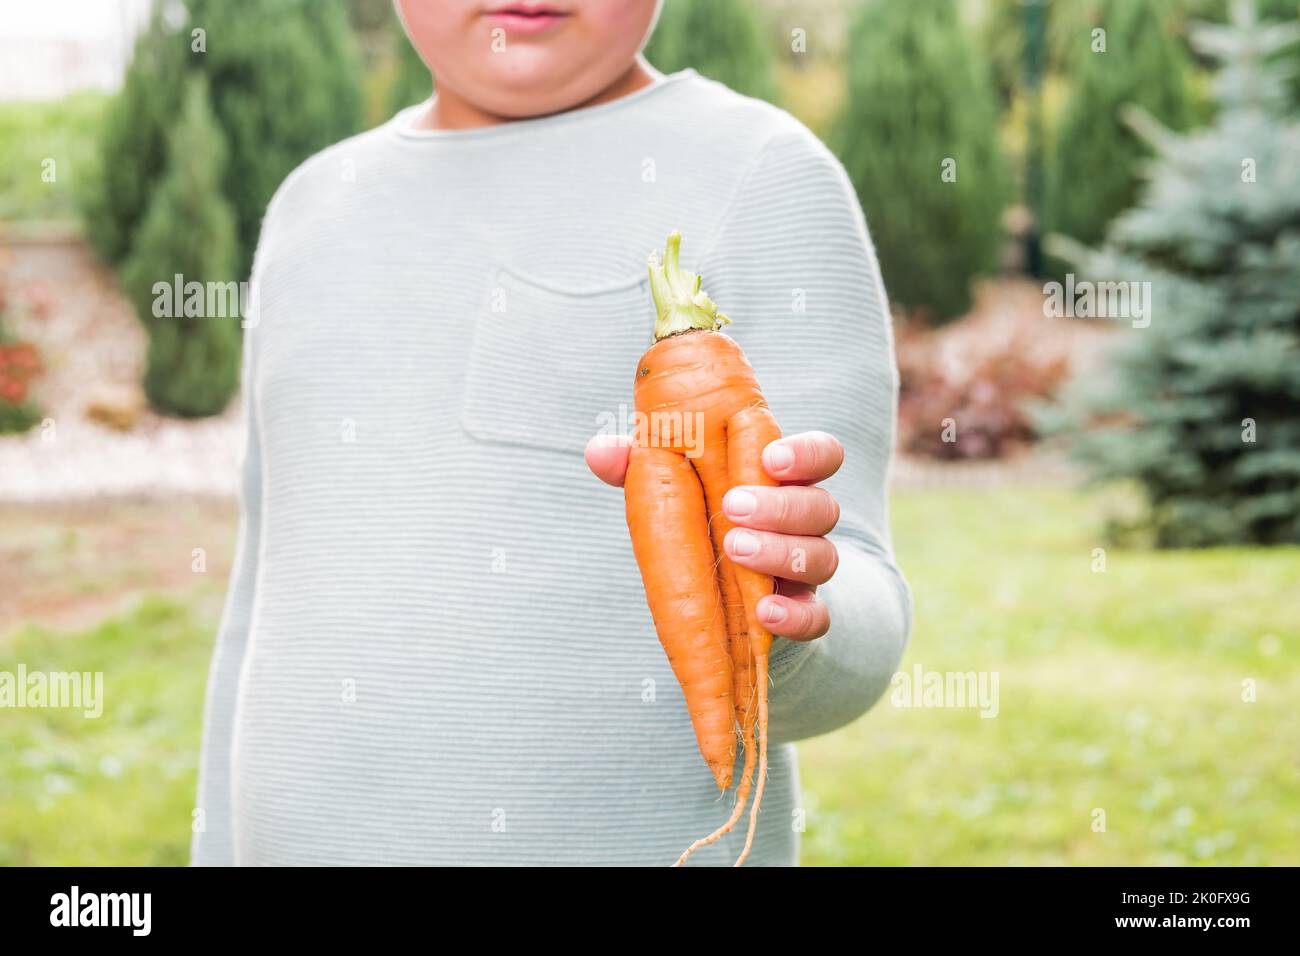 Ragazzo che tiene in mano carota imperfetta fatta in casa. Verdura dalla forma strana. Biologico, fresco e maturo. Pieno di vitamina A e beta-carotene. Foto Stock